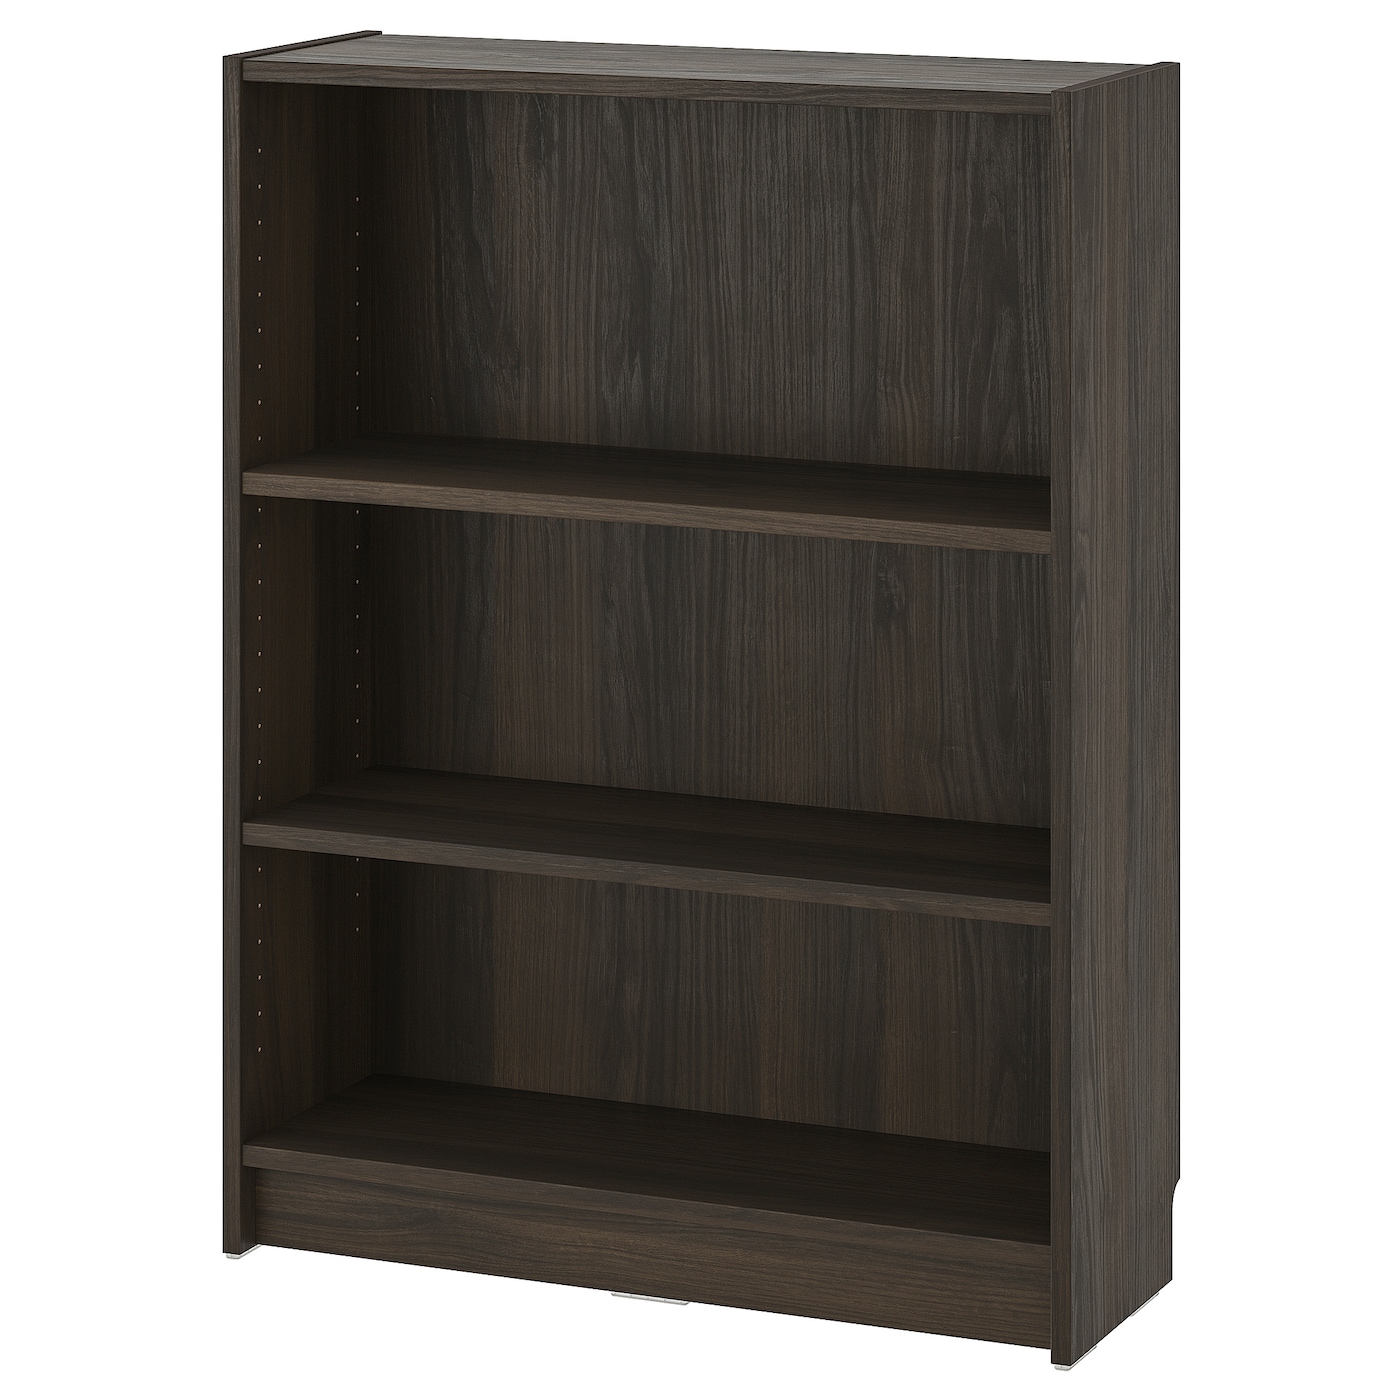 Книжный шкаф -  BILLY IKEA/ БИЛЛИ ИКЕА, 80х28х106 см,  темно-коричневый